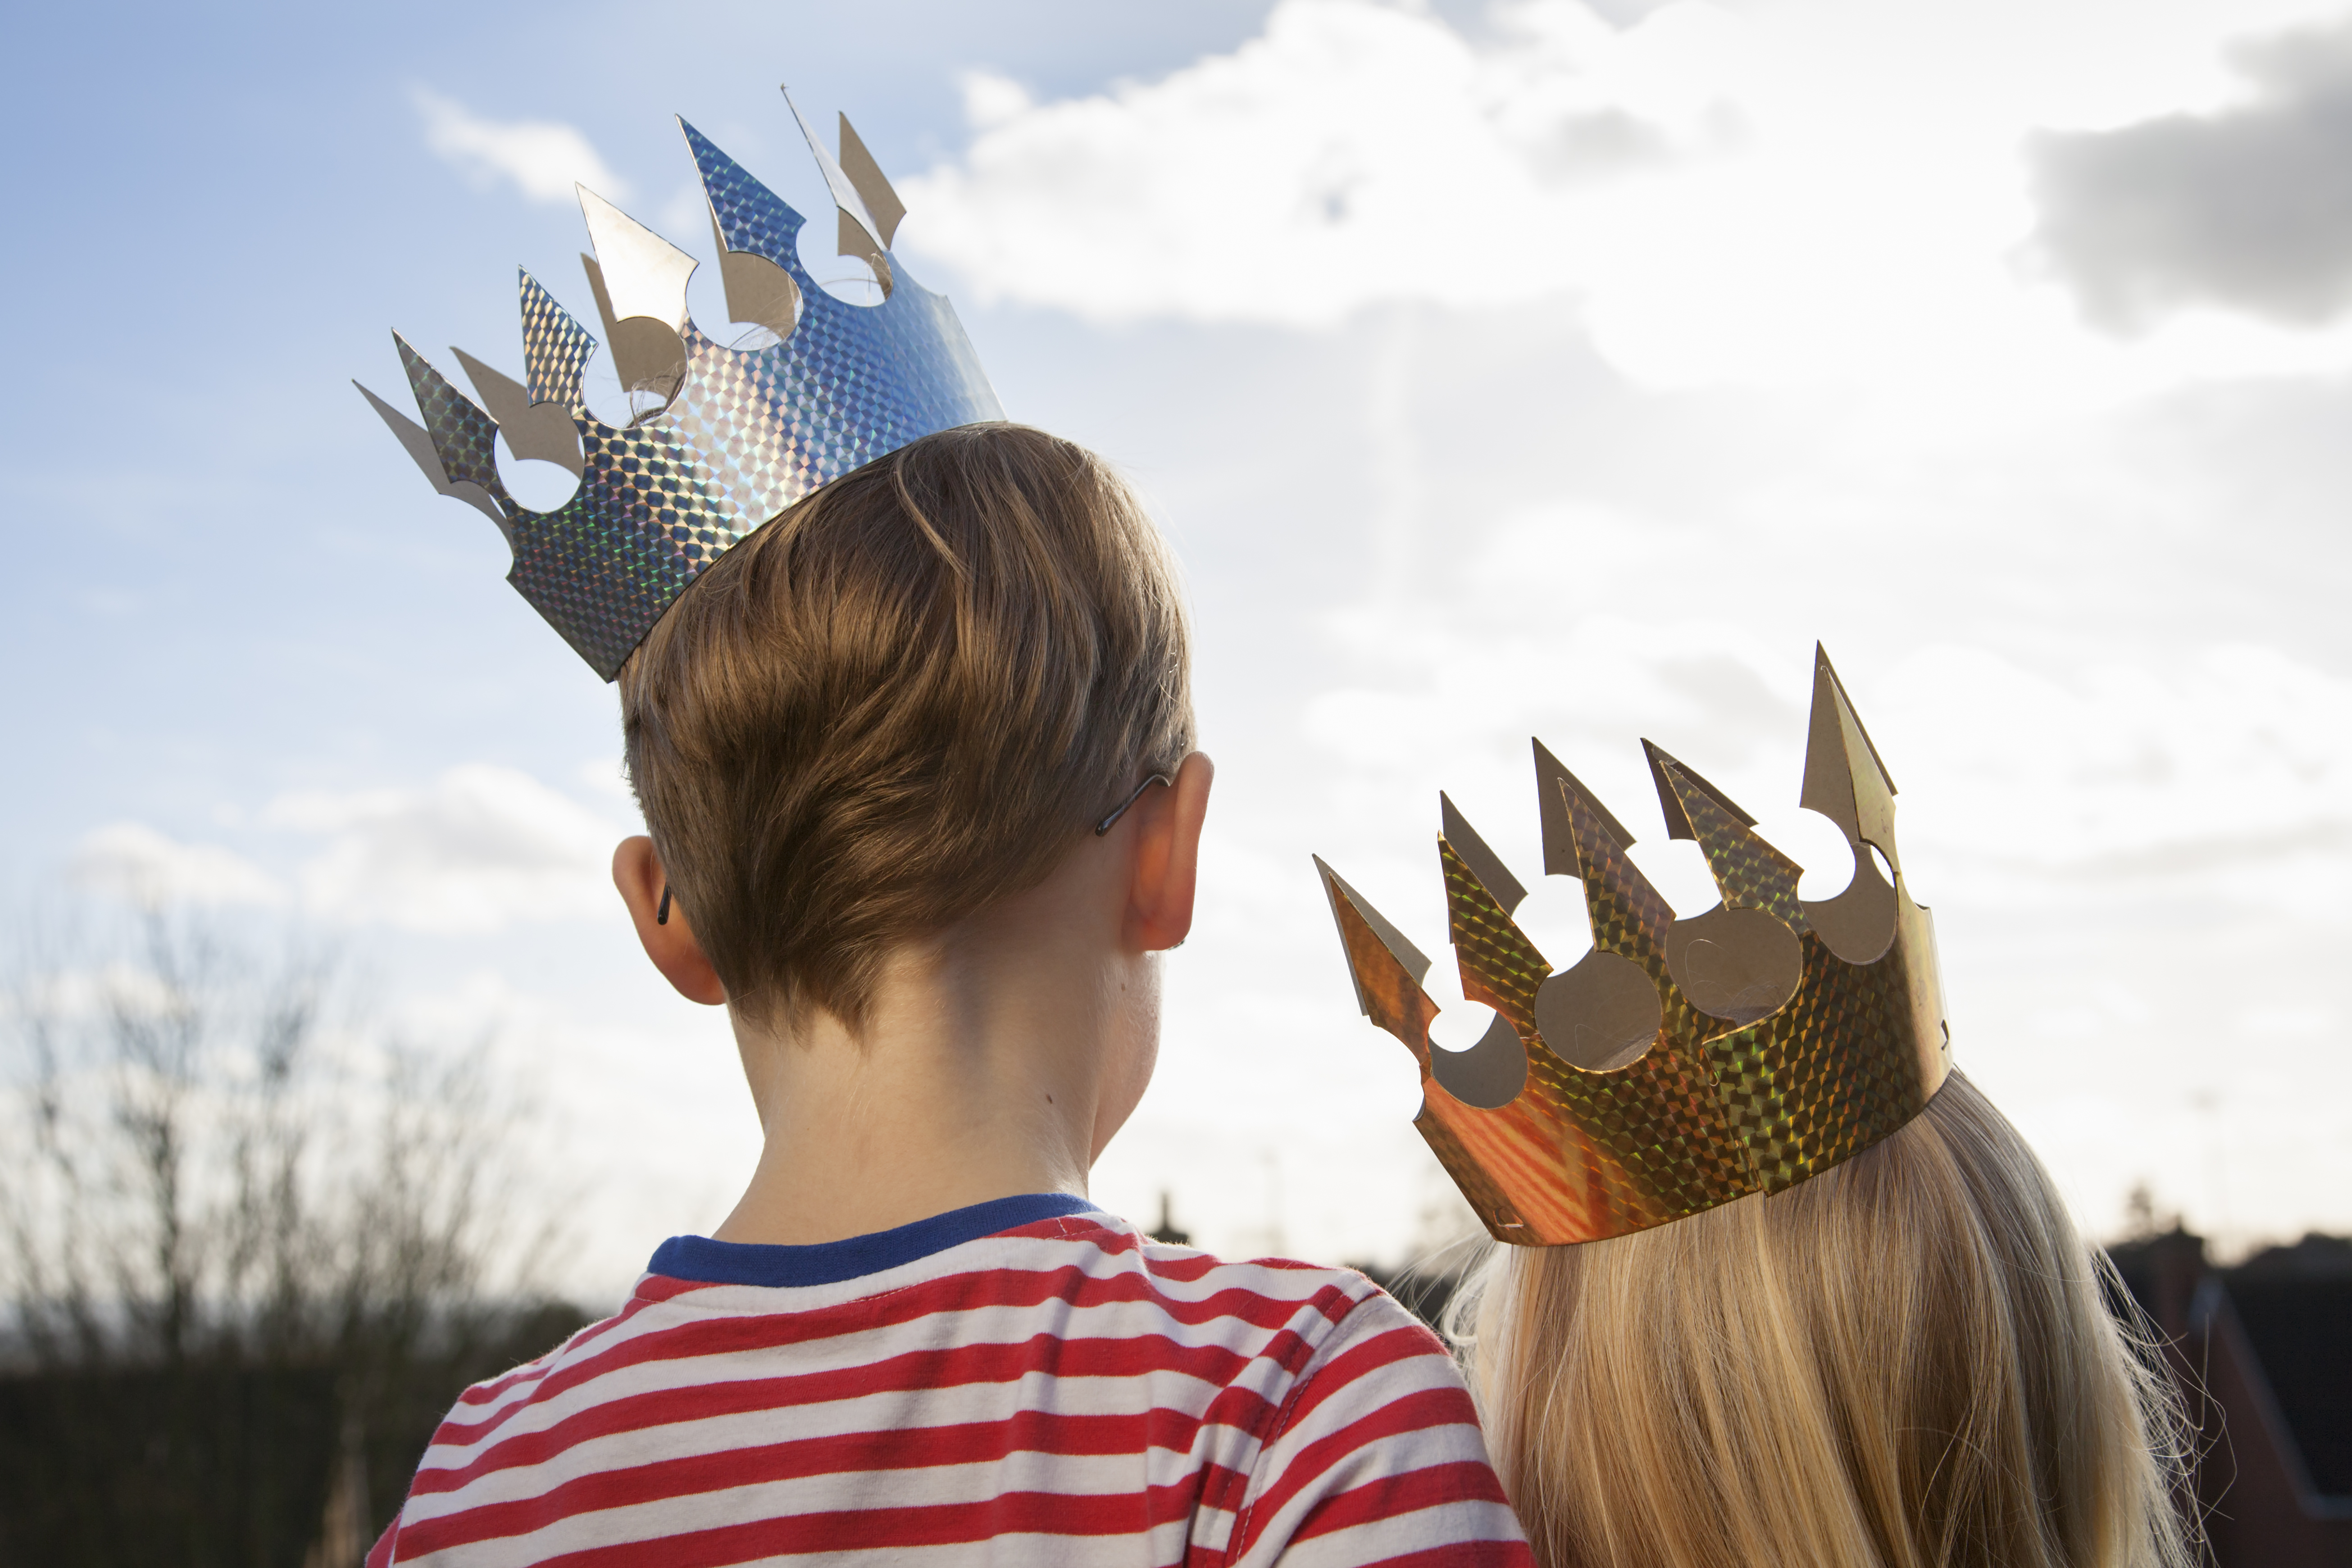 Two children in fancy dress, wearing crowns.